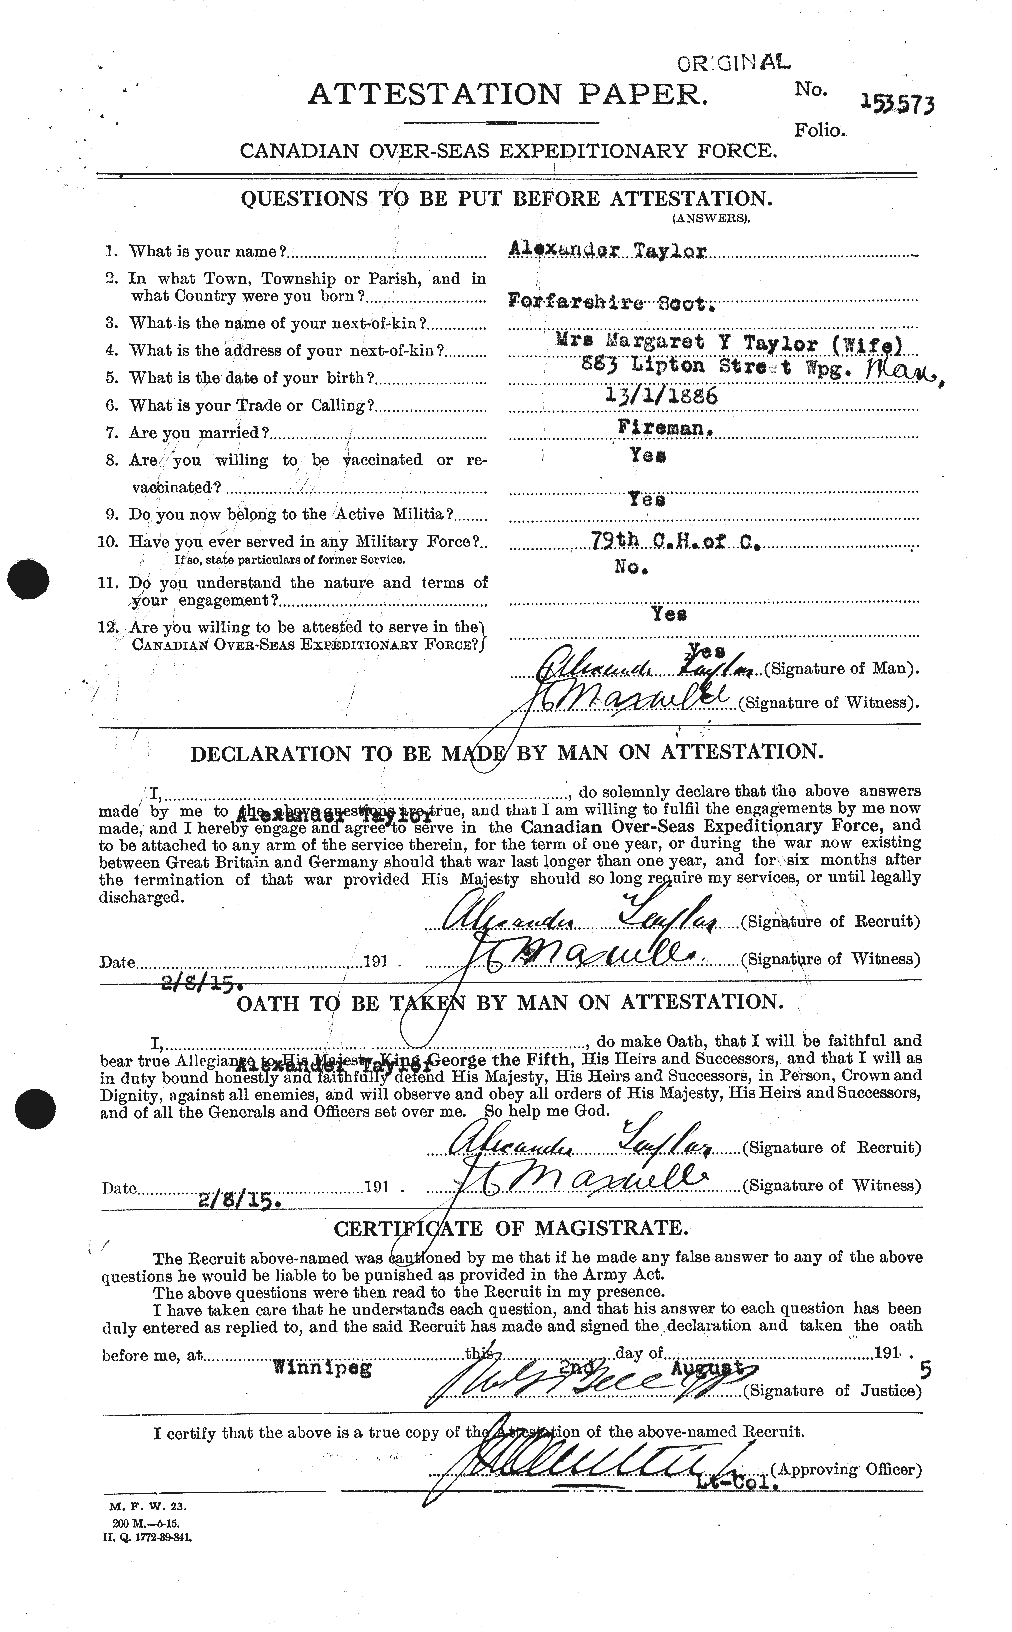 Dossiers du Personnel de la Première Guerre mondiale - CEC 626143a